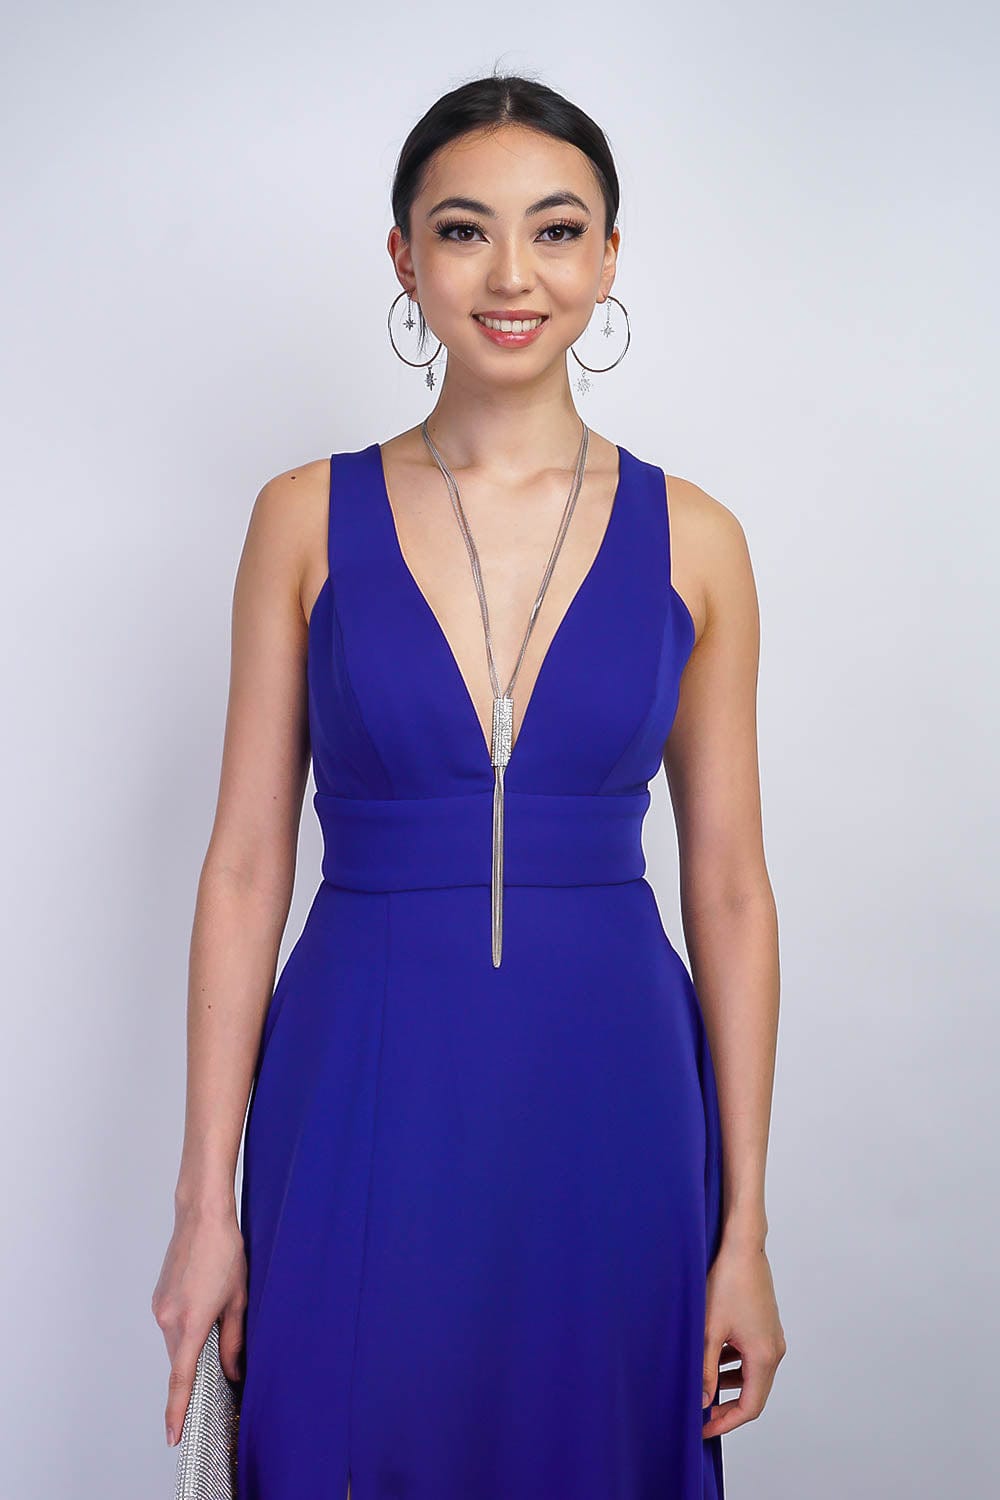 GOWNS Cobalt Blue V Neck Front Slit Soraya Gown - Chloe Dao